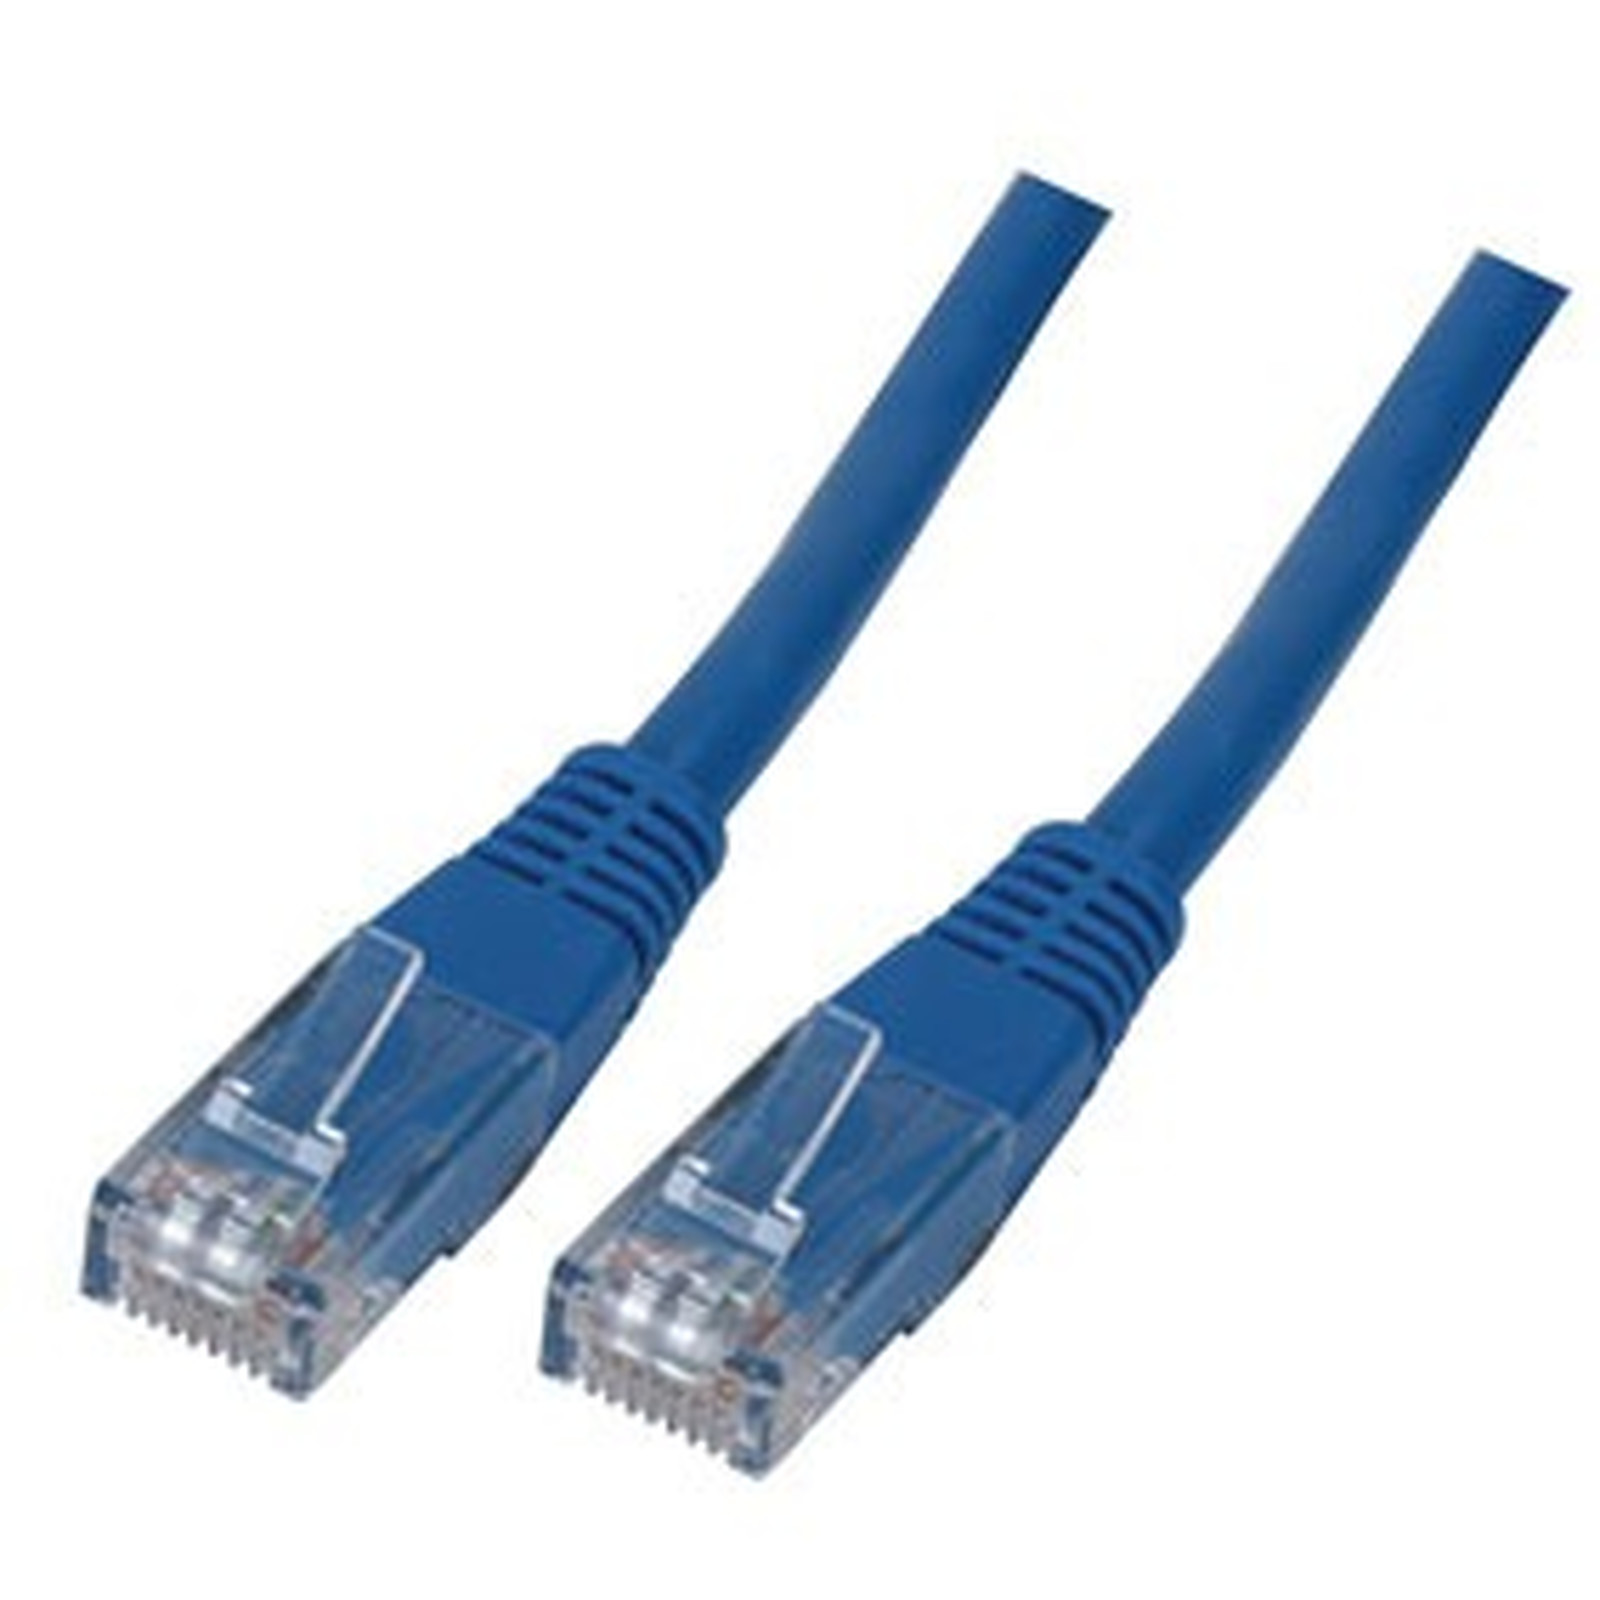 Cable RJ45 categorie 6 U/UTP 1 m (Bleu) - Cable RJ45 Generique